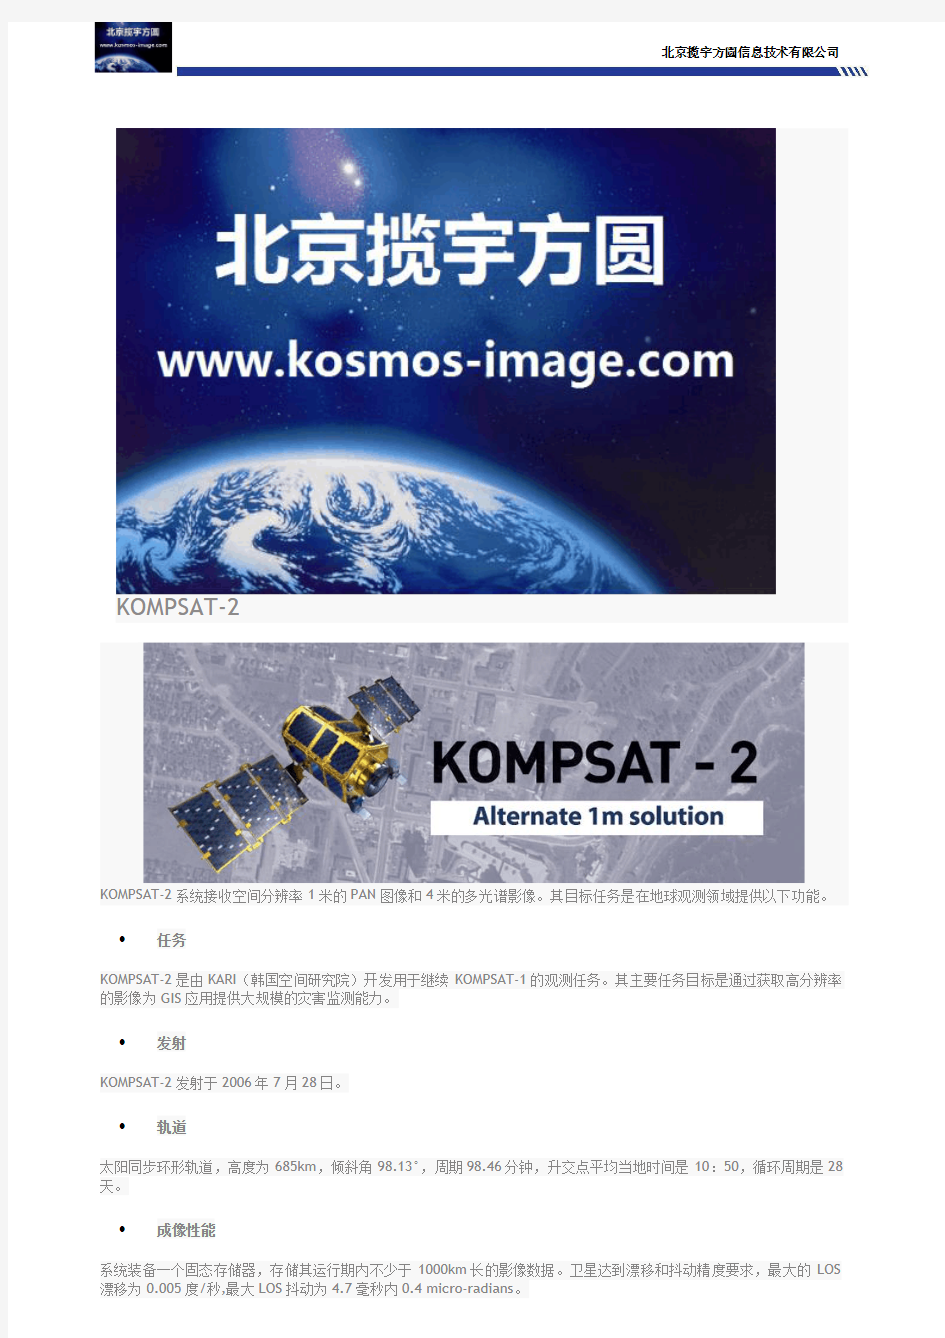 kompsat-2卫星kompsat-3卫星kompsat-3A卫星详细参数